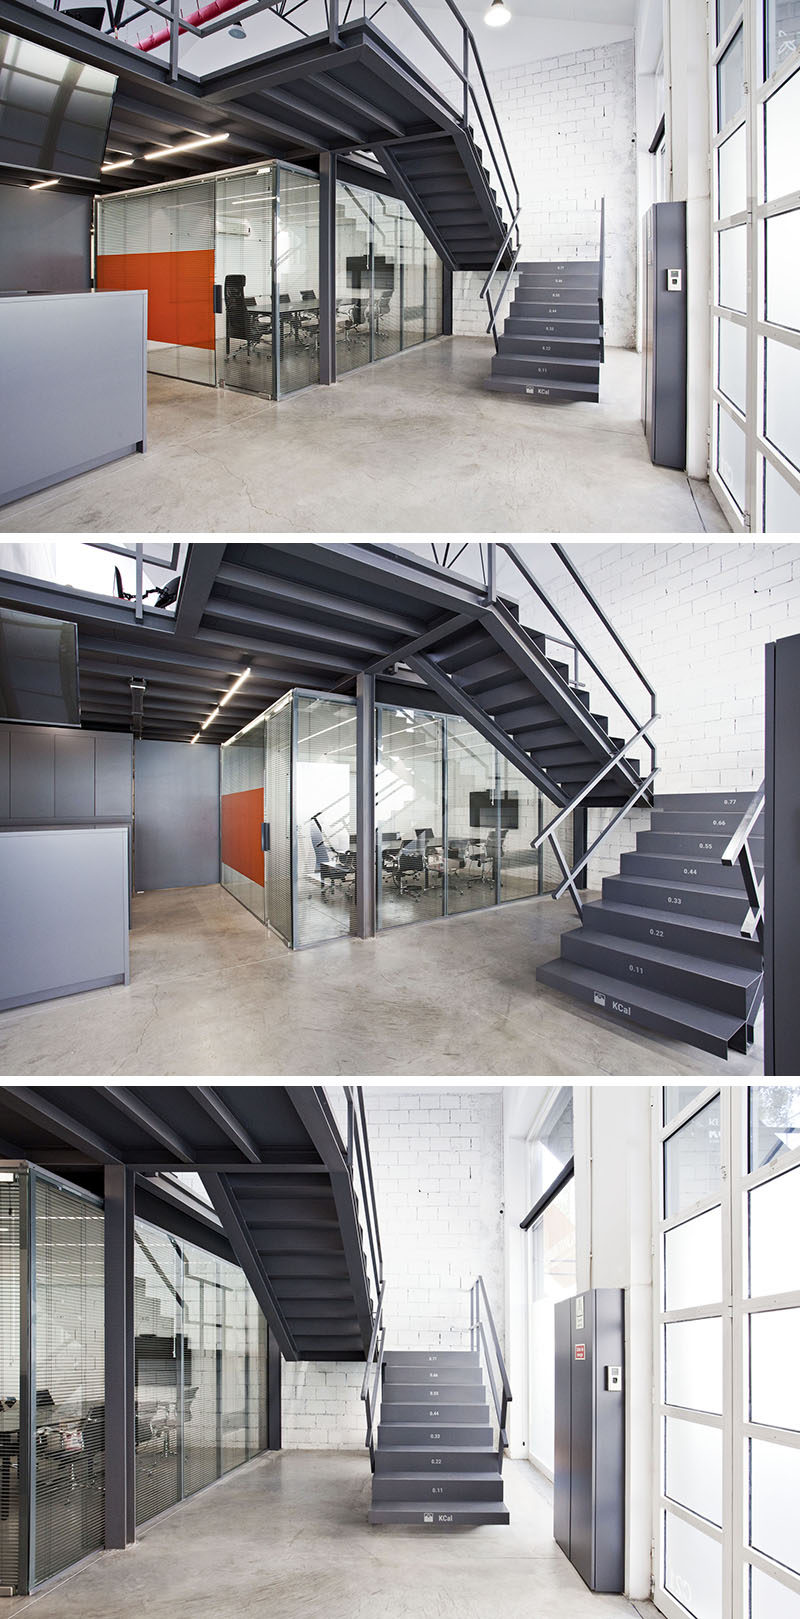 Идеи дизайна лестницы - на каждой ступеньке этой офисной лестницы указано количество калорий, которые сжигают на каждой ступеньке, когда поднимаетесь по ней. 